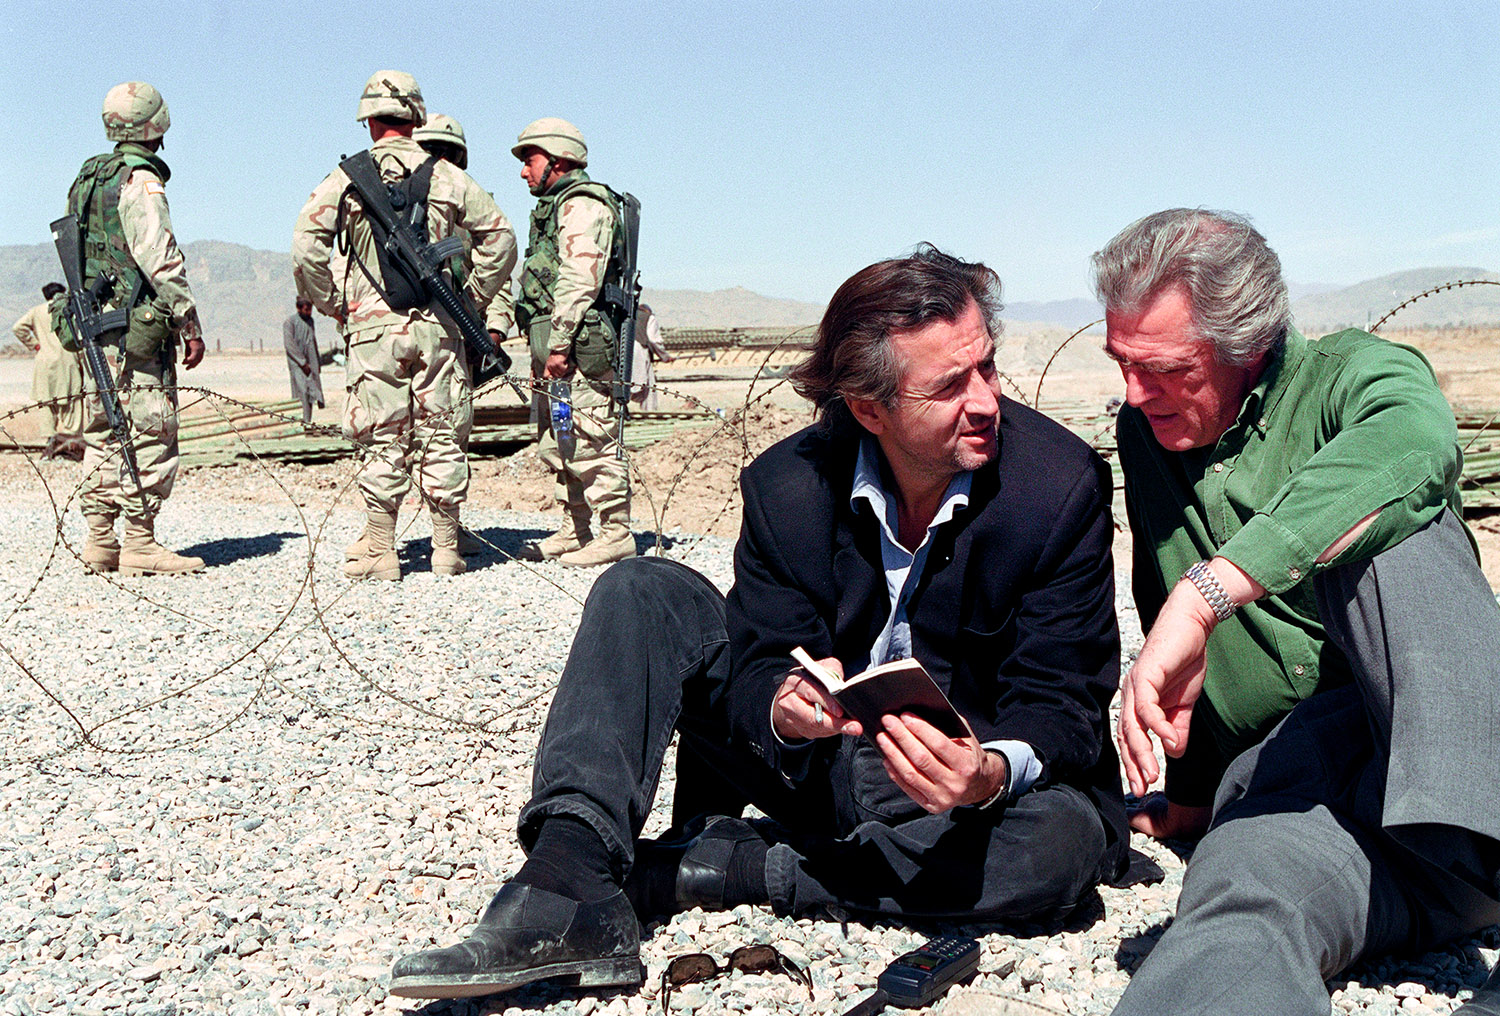 A l'aéroport de Kandahar Bernard-Henri Lévy etGilles Hertzog sont assis par terre, il y a derrière eux les forces spéciales américaines.